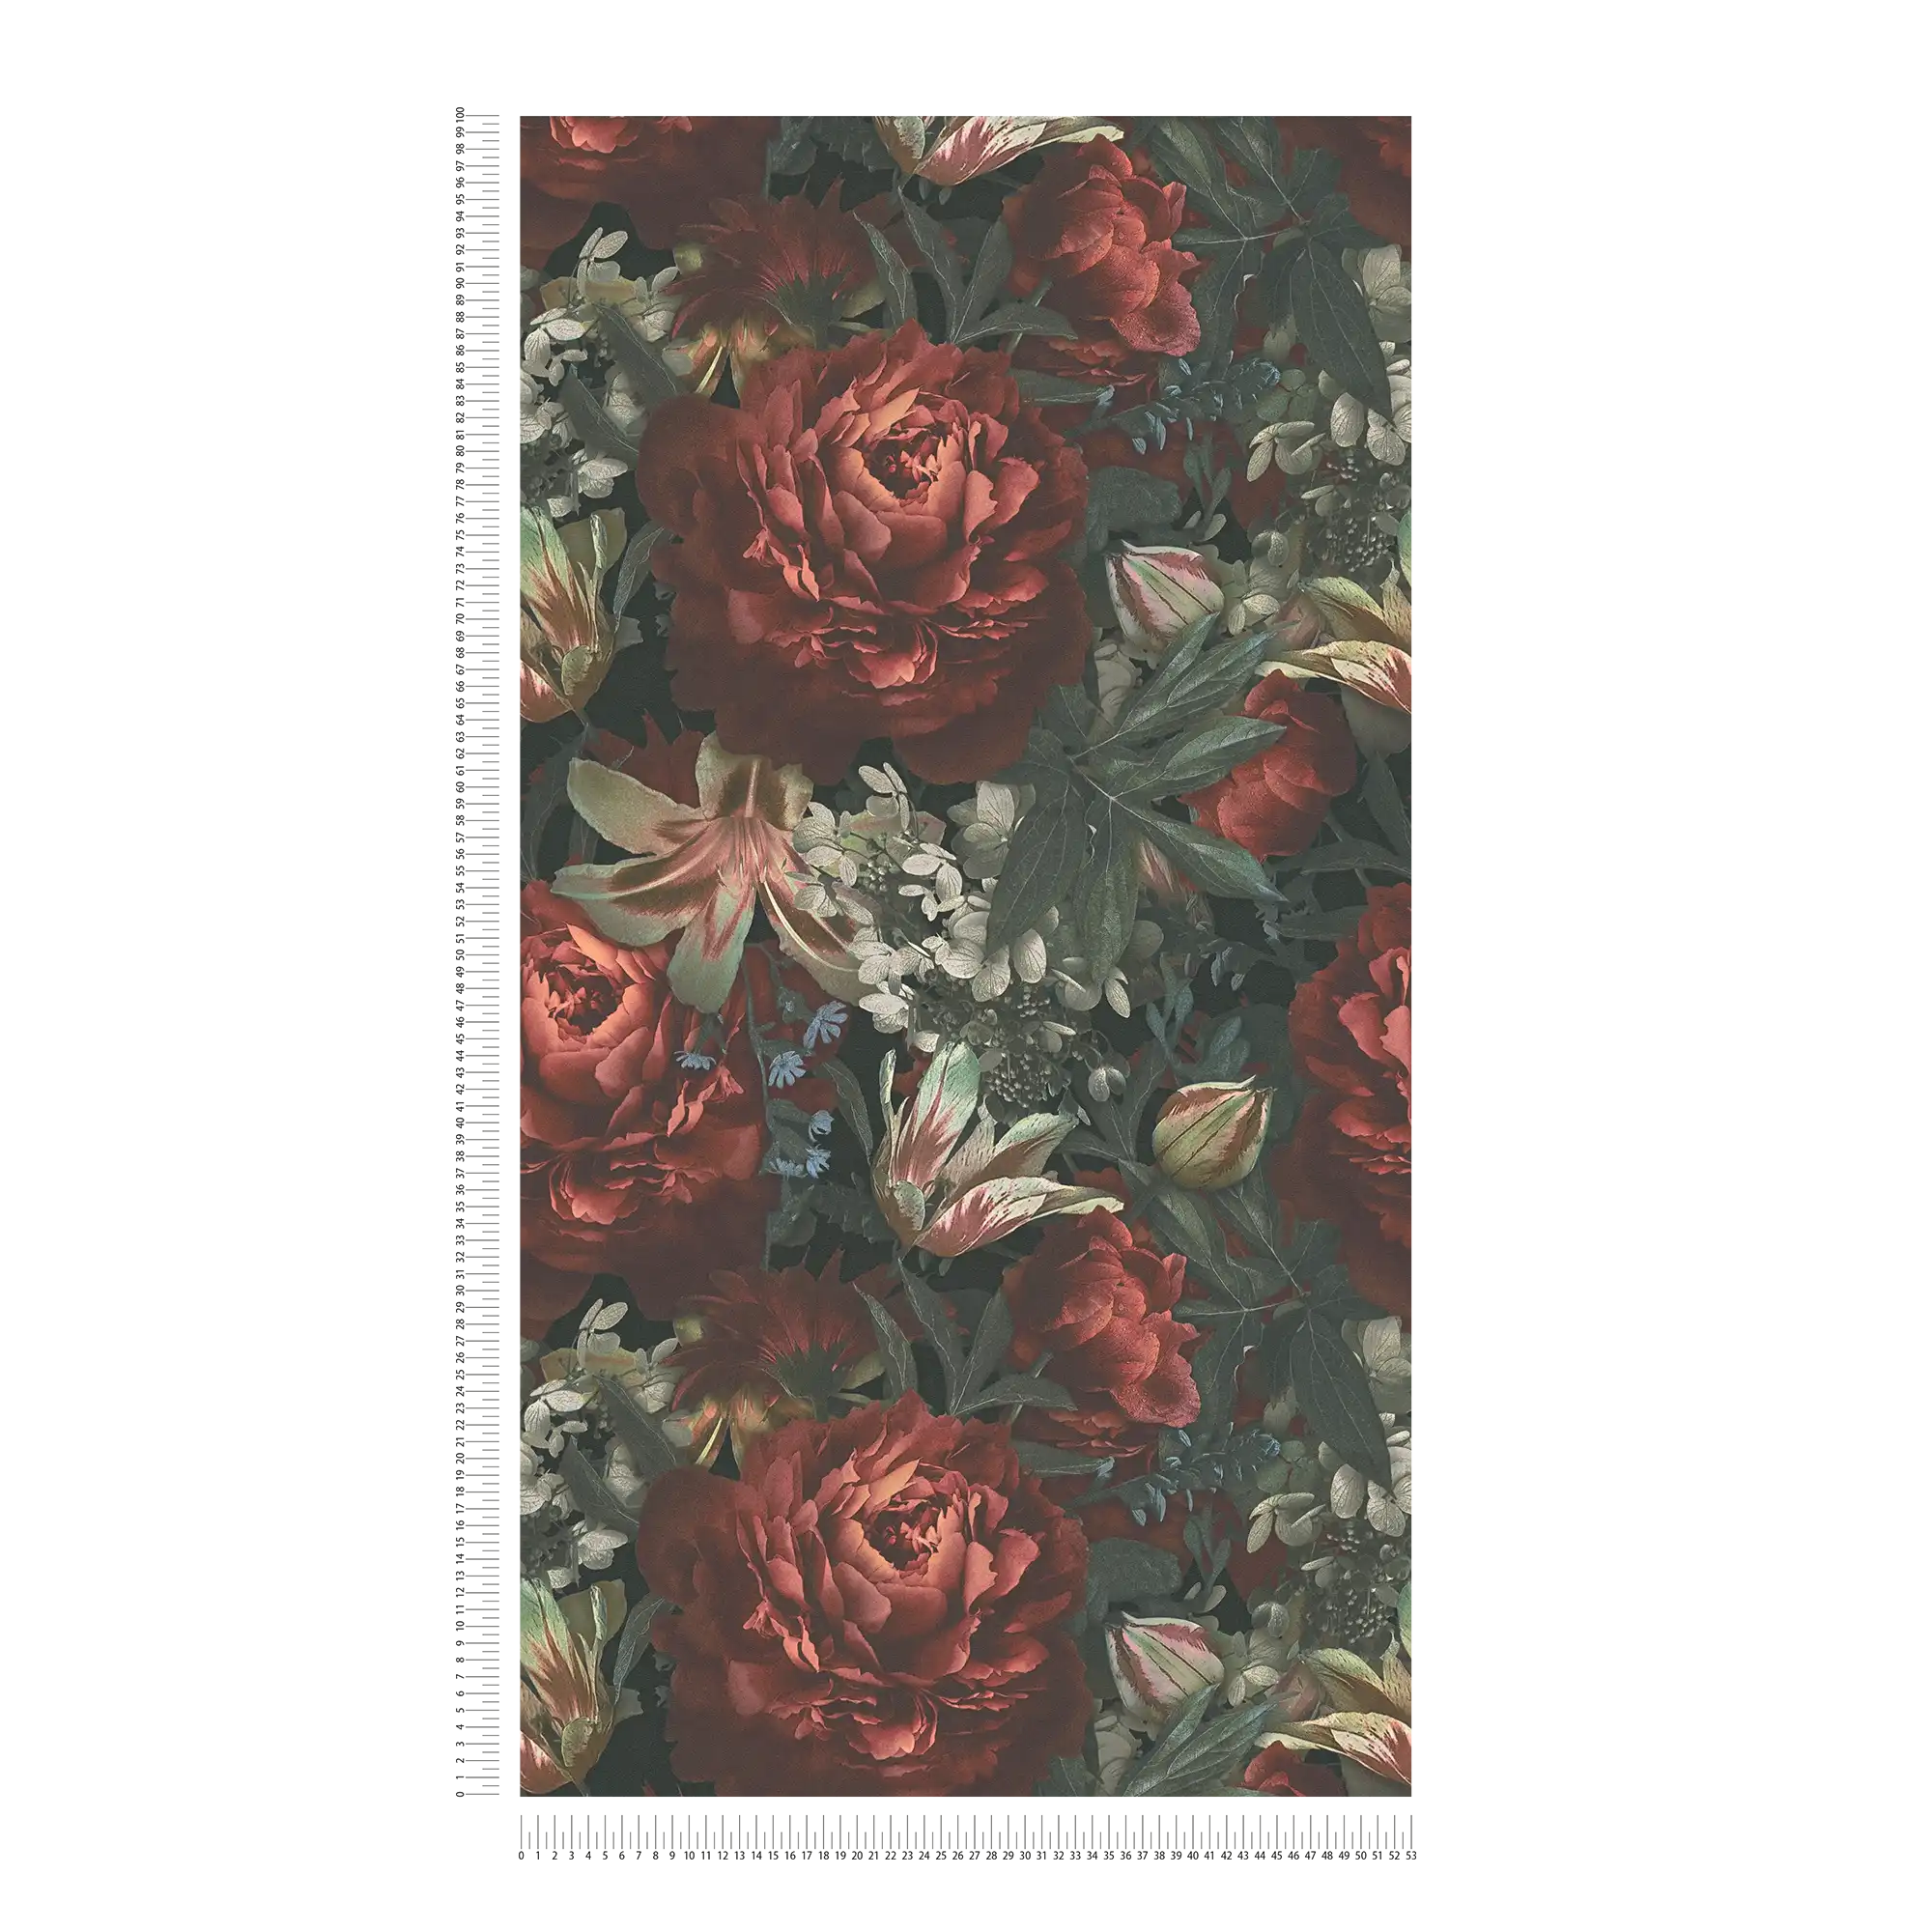             Papel pintado floral rosas y tulipanes estilo vintage - verde, rojo, crema
        